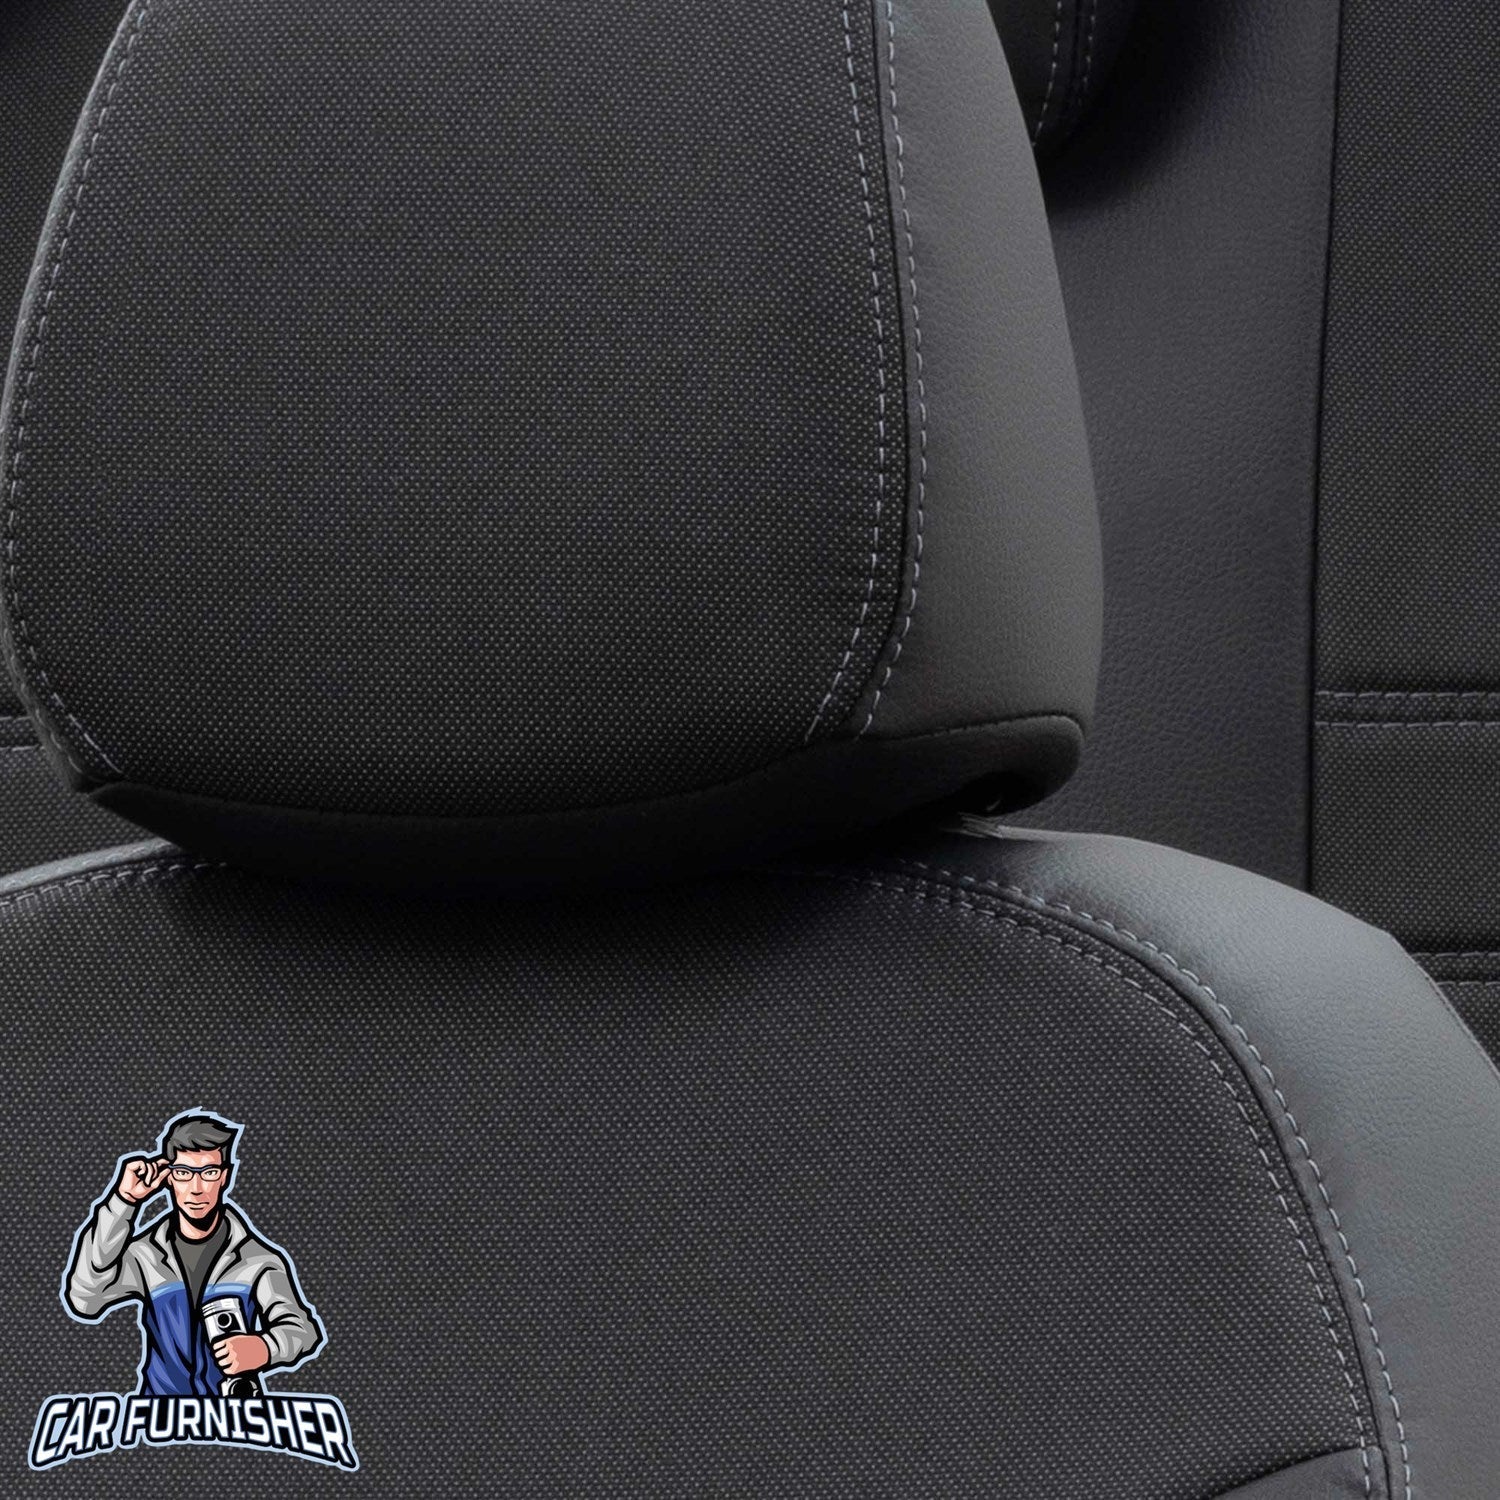 Kia Venga Seat Cover Paris Leather & Jacquard Design Black Leather & Jacquard Fabric